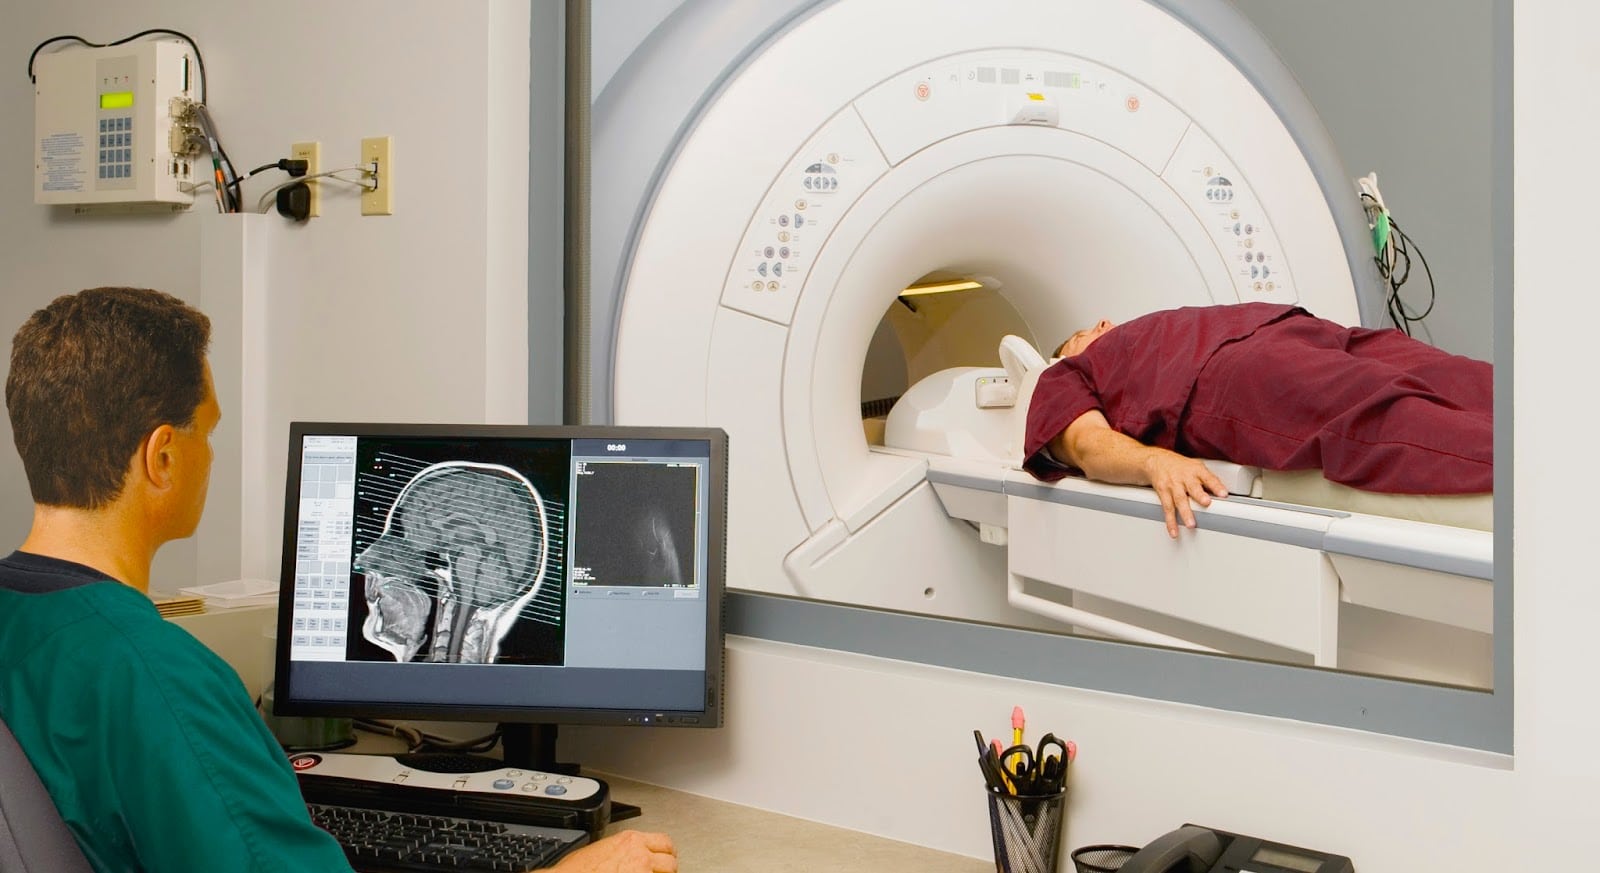 МРТ: современная высокотехнологичная методика диагностики